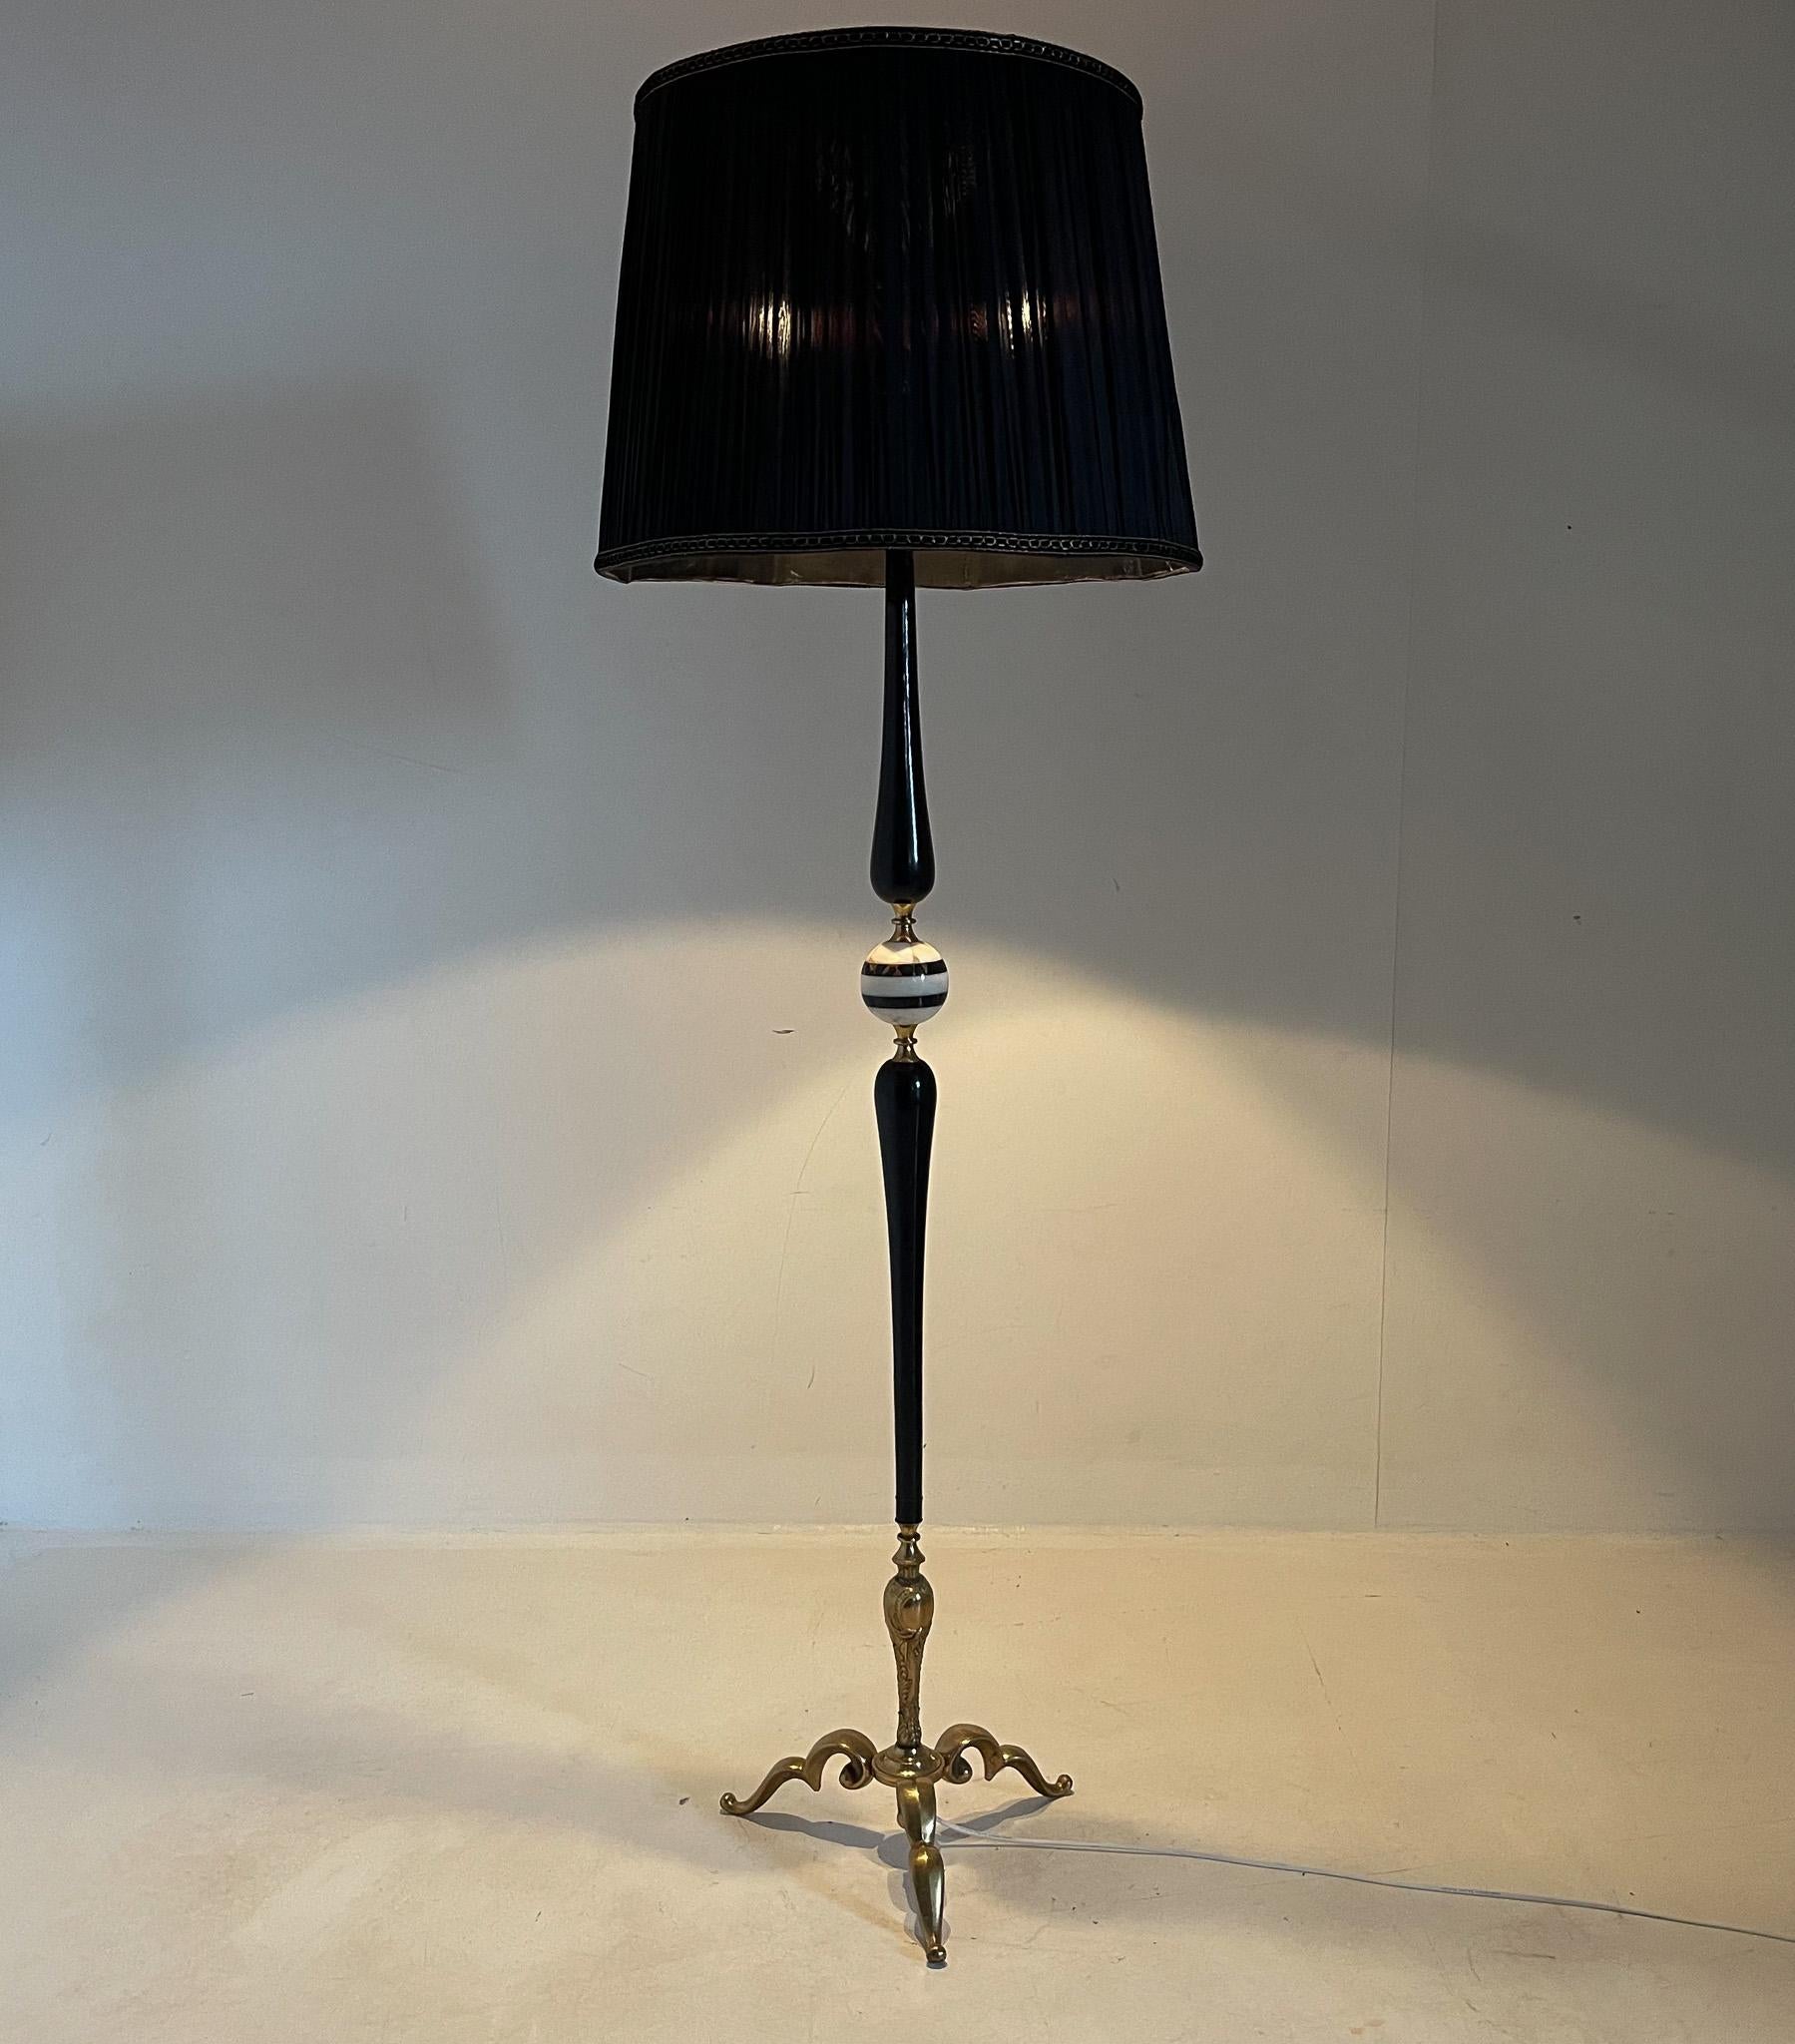 Magnifique lampadaire vintage en bois ébonisé, onyx et laiton avec abat-jour en tissu noir. Produit en Italie dans les années 1950. Ampoules : 3 x E25-E27.